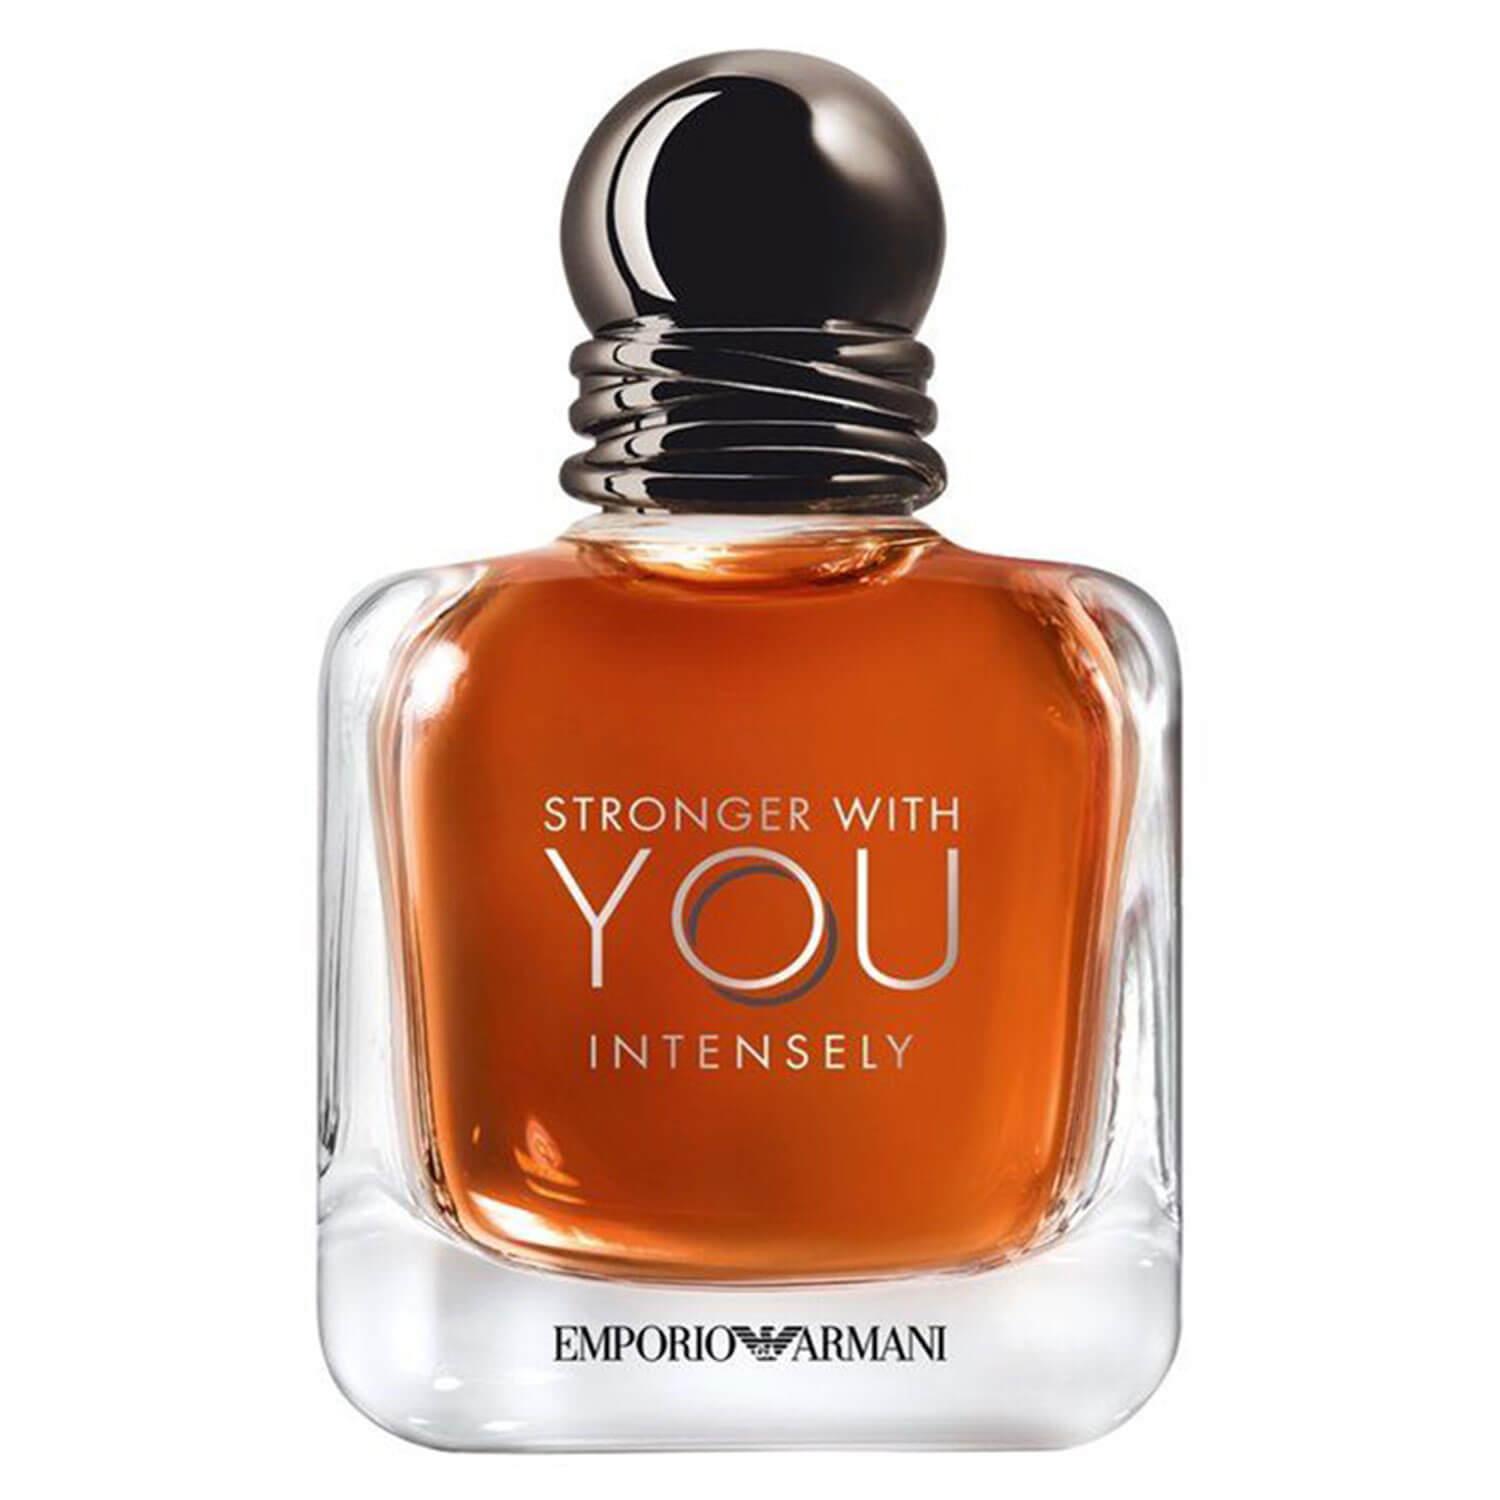 Emporio Armani - Stronger With You Intense Eau de Parfum